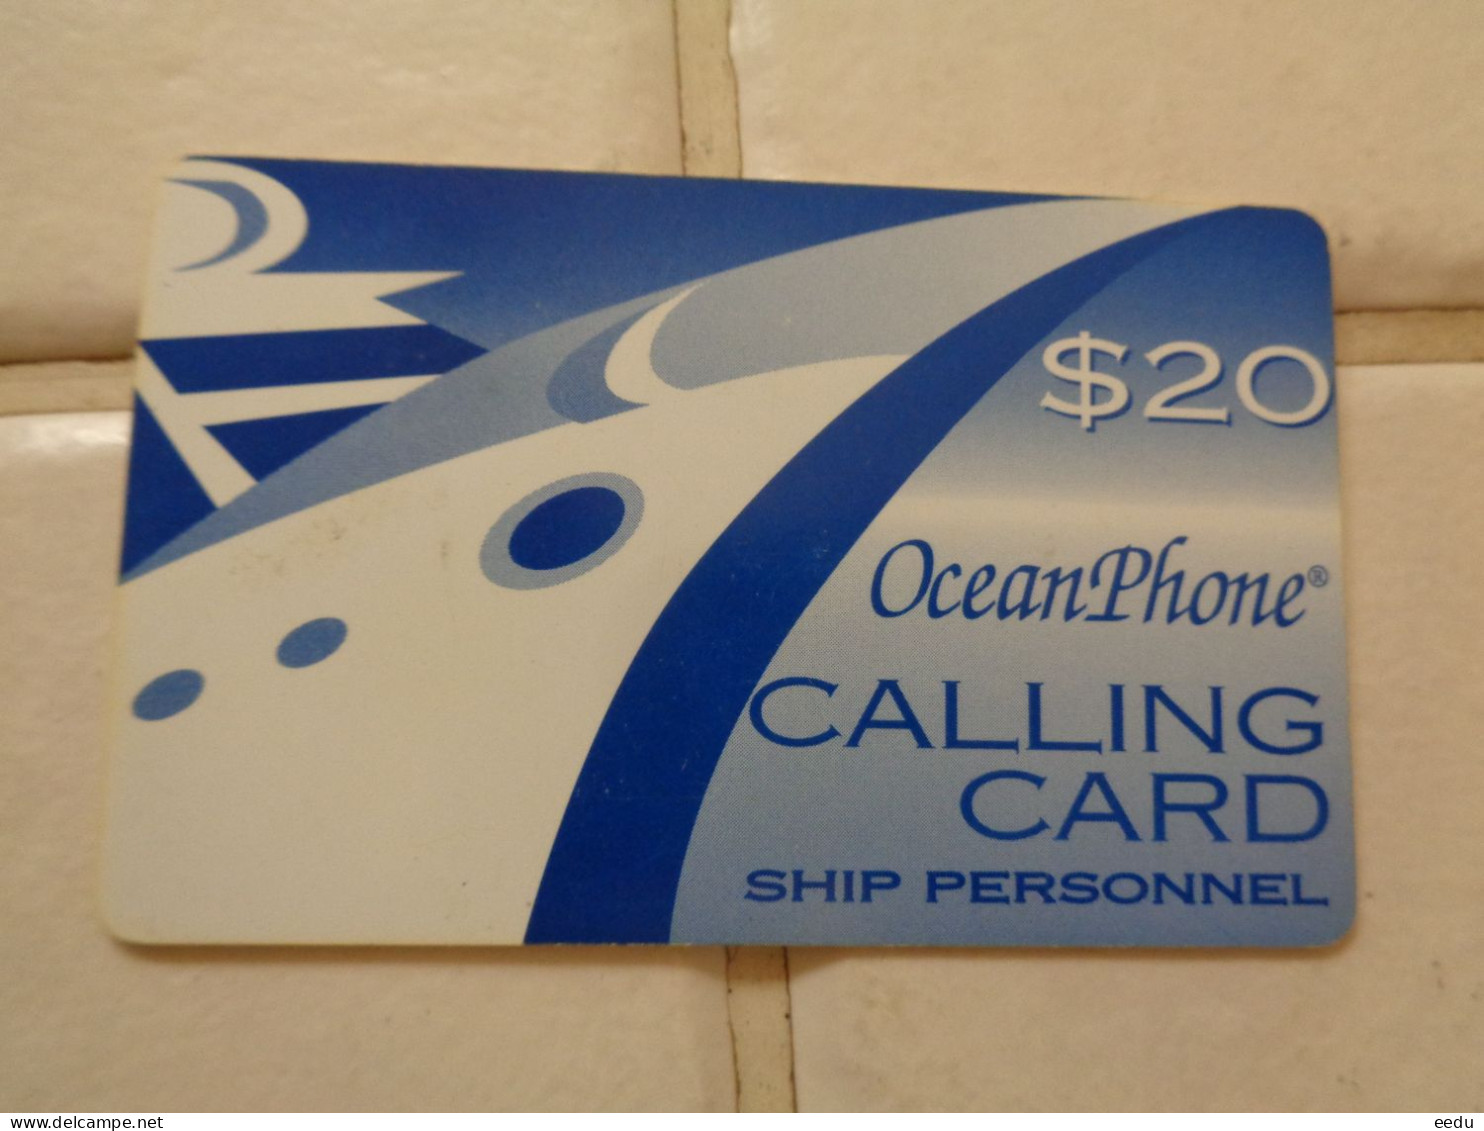 US Virgin Islands Phonecard - Vierges (îles)